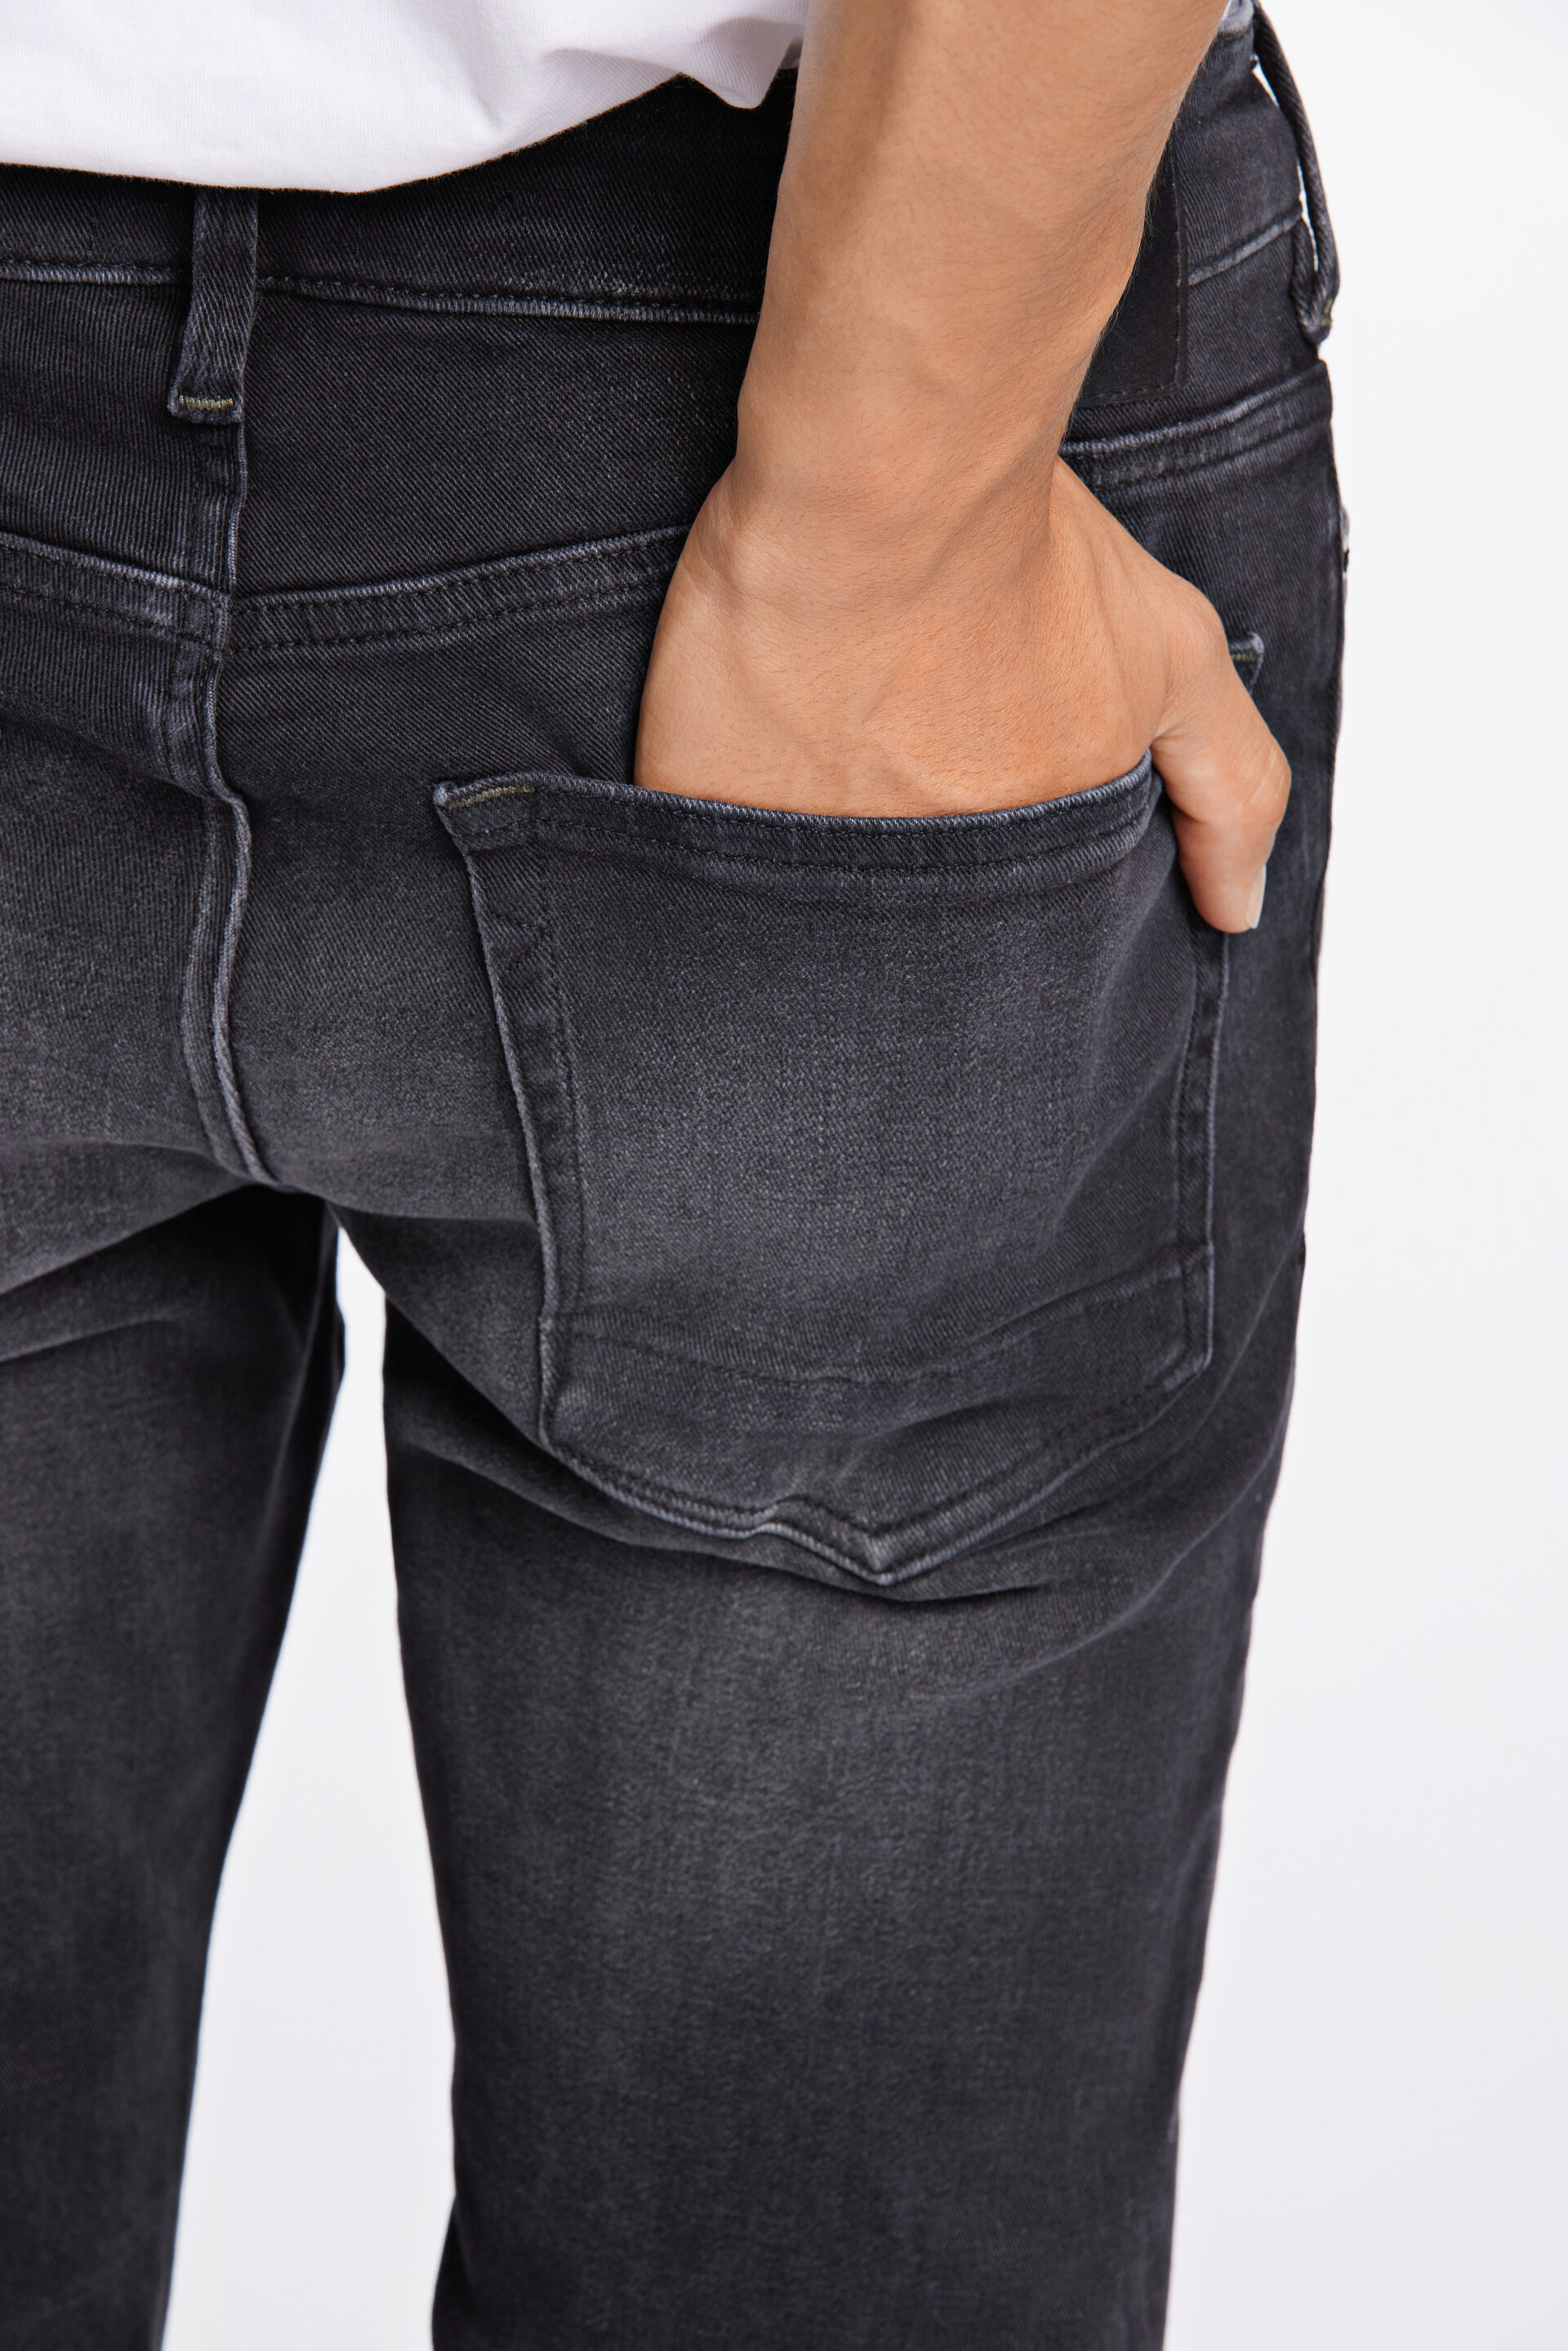 Junk de Luxe  Jeans 60-021001